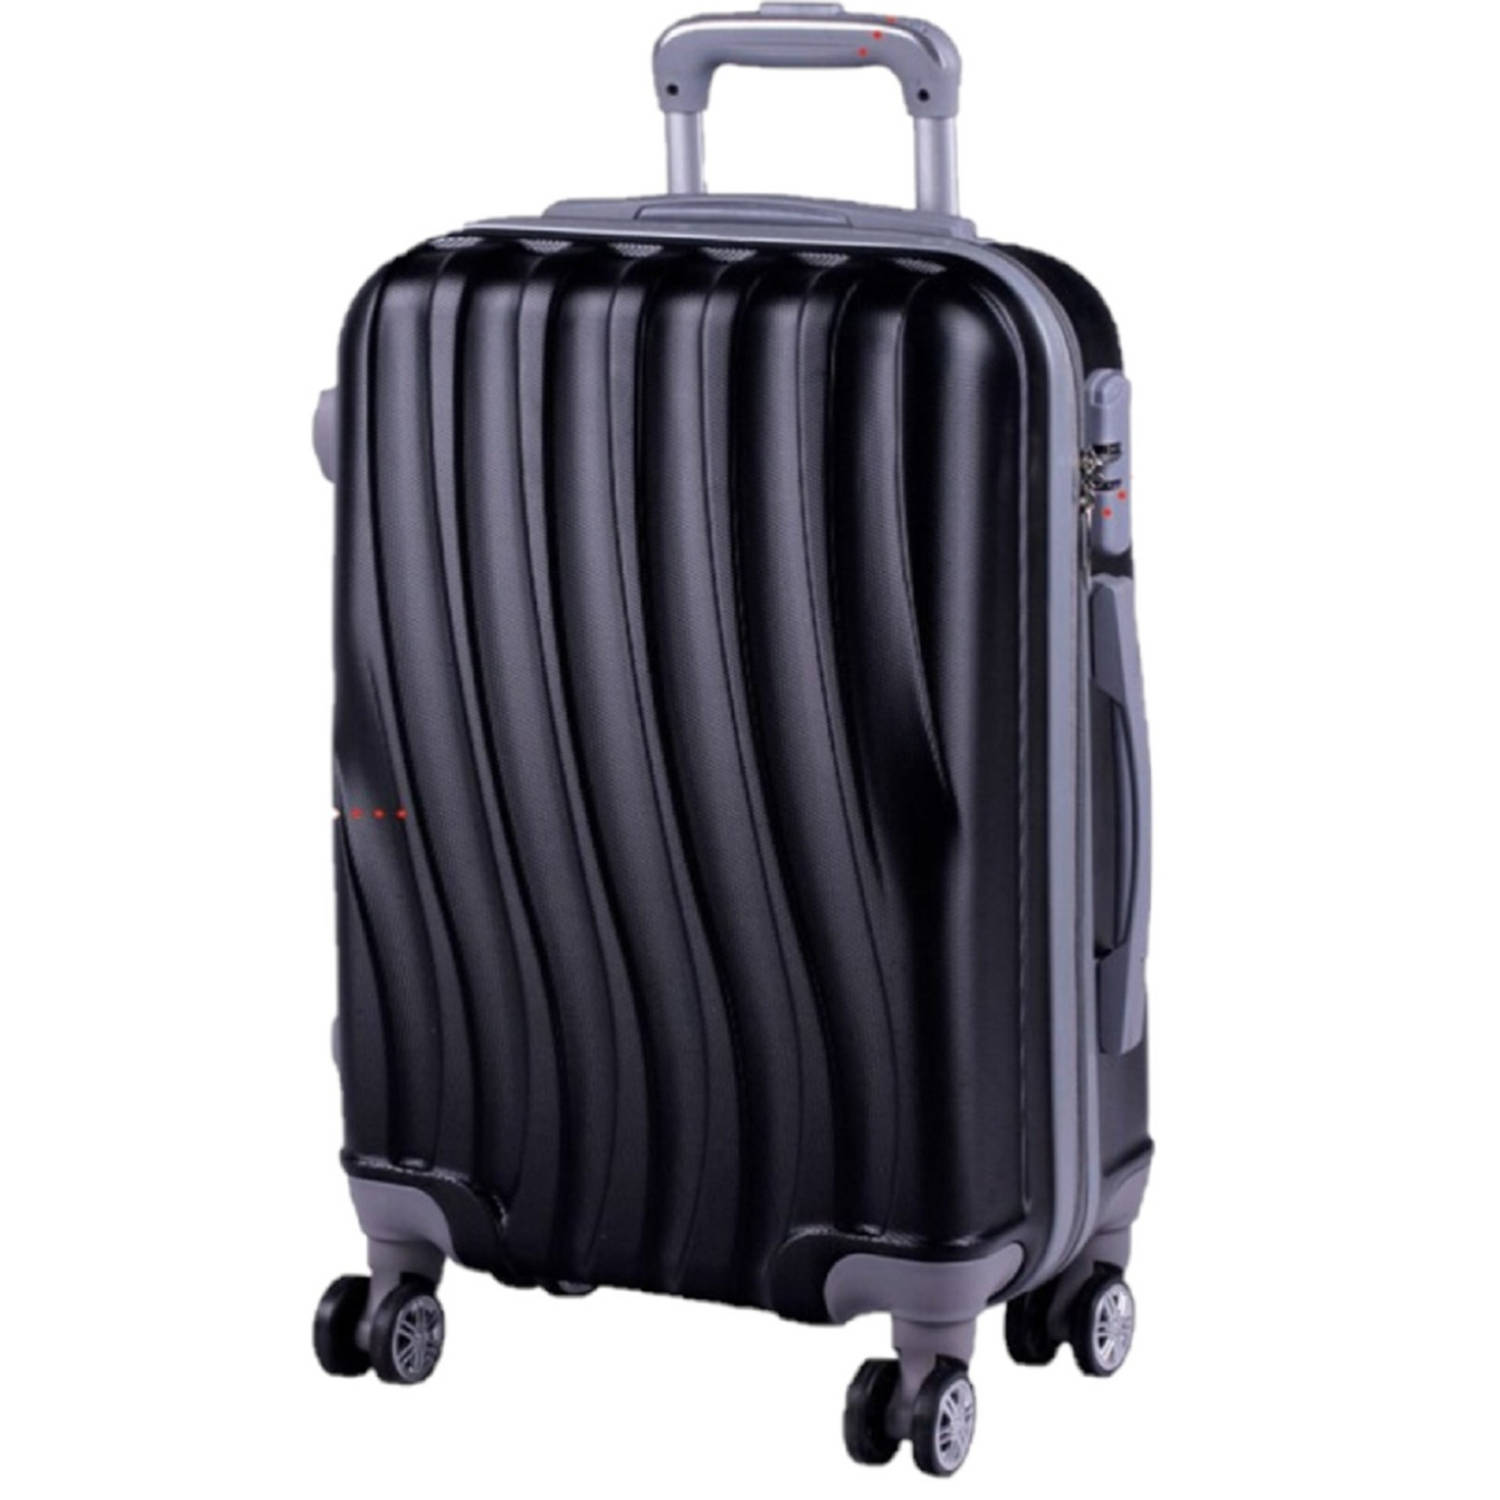 Cabine trolley koffer met zwenkwielen 33 liter zwart - koffers | Blokker